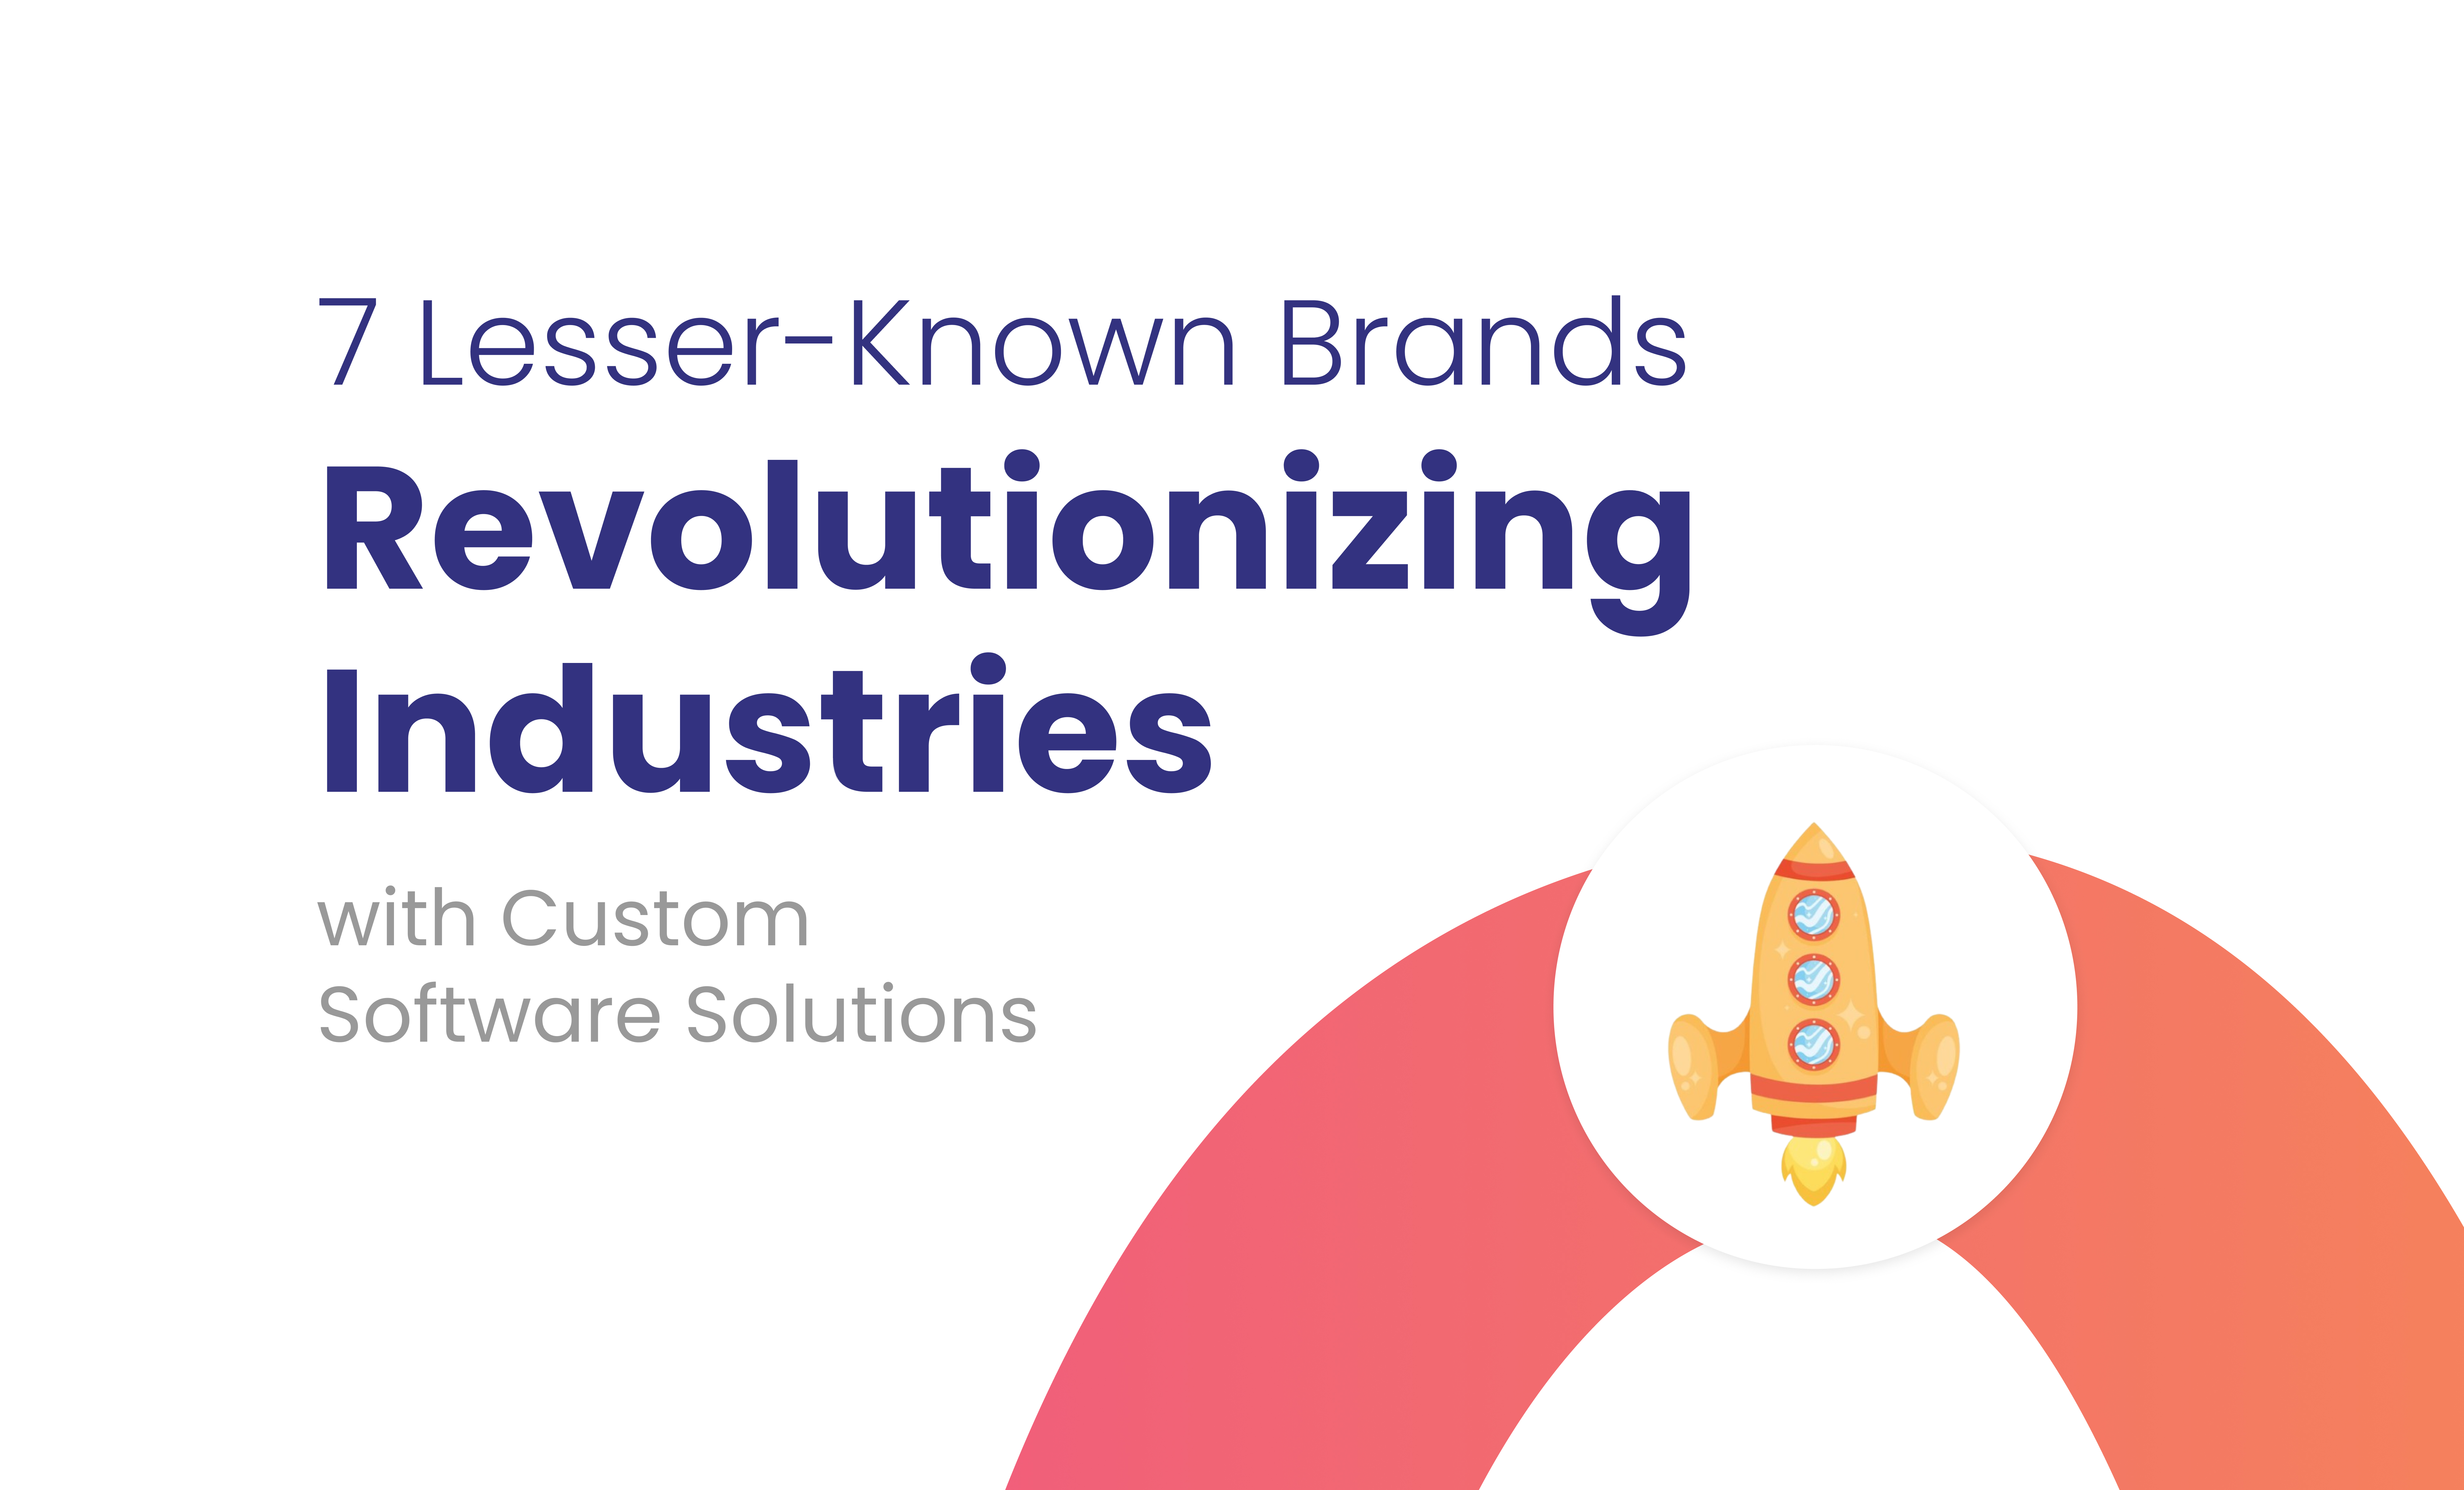 7 lesser known brands revolutionizing industries